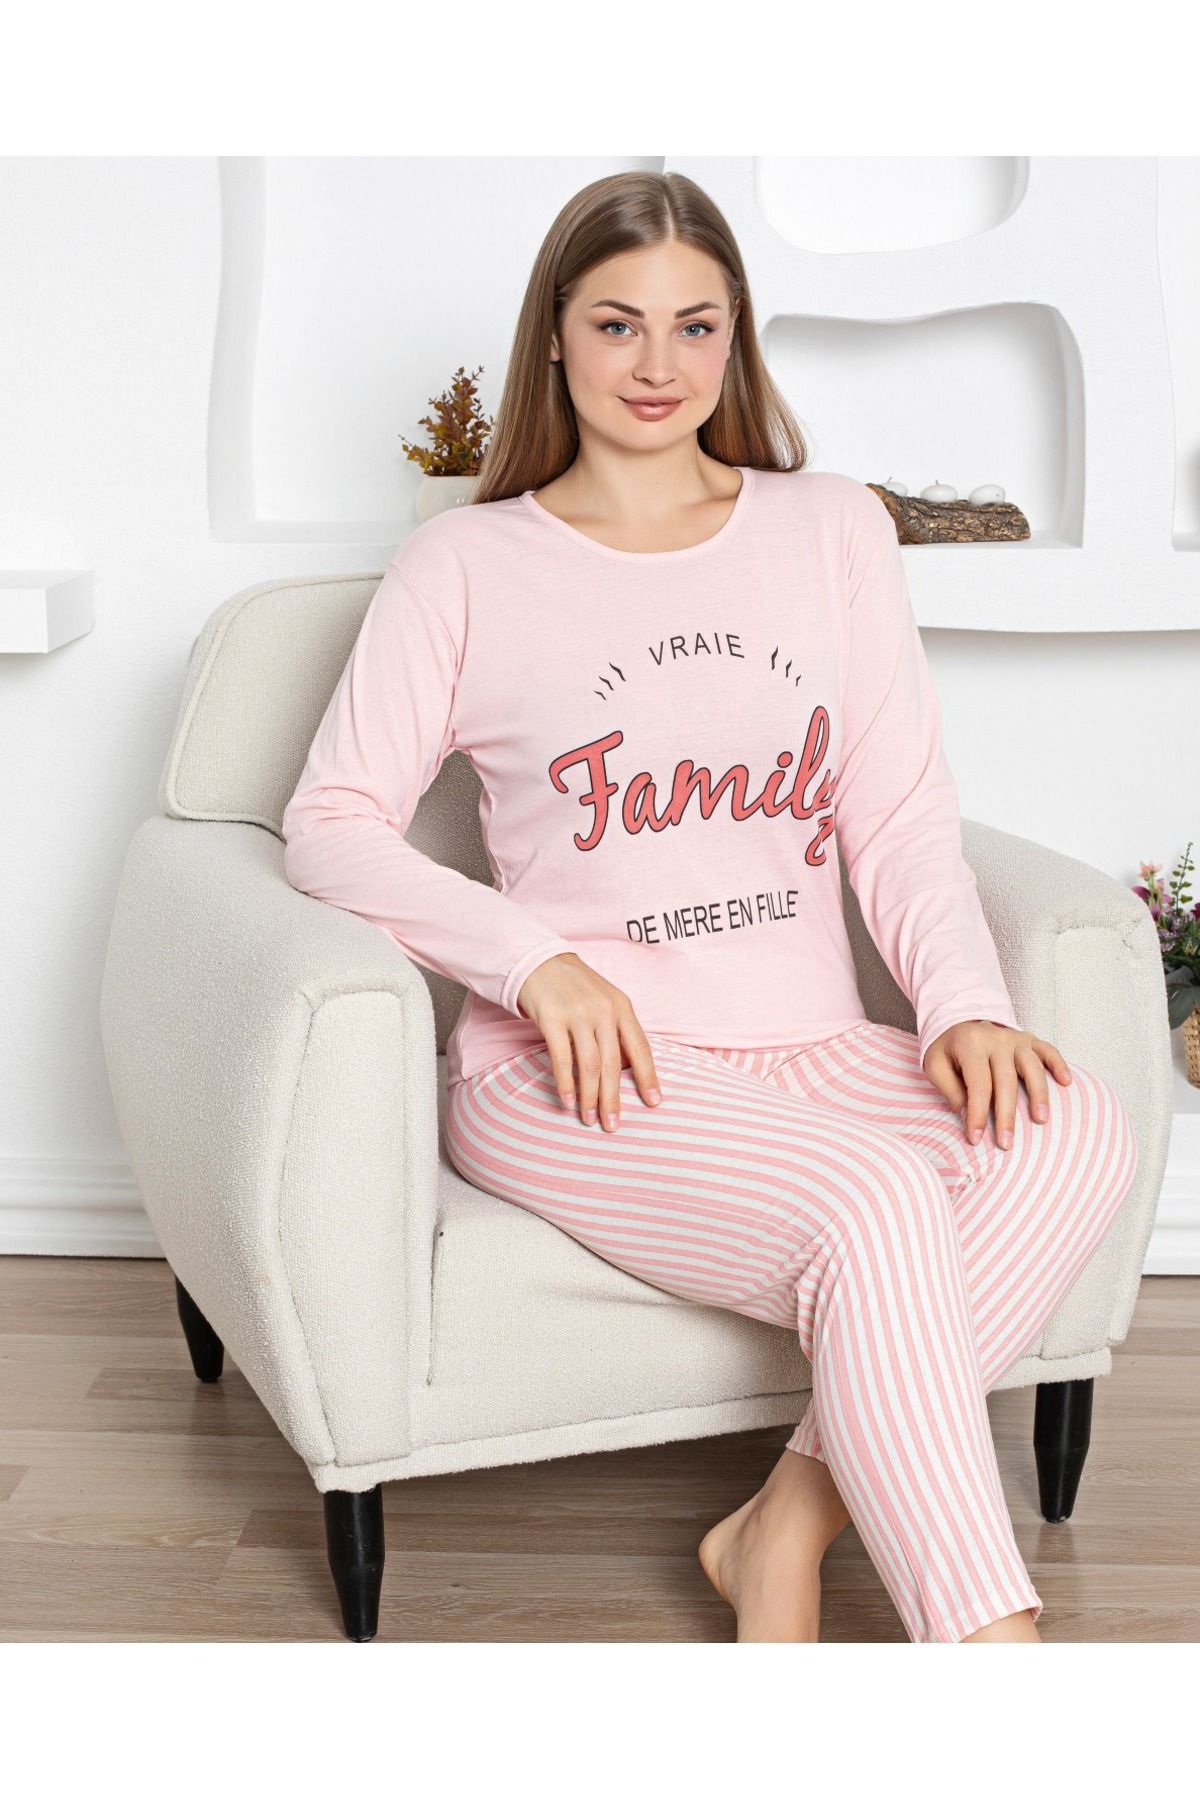 Rüyam KADIN Büyük Beden - Lohusa - Ev Giyim Pijama Takımı